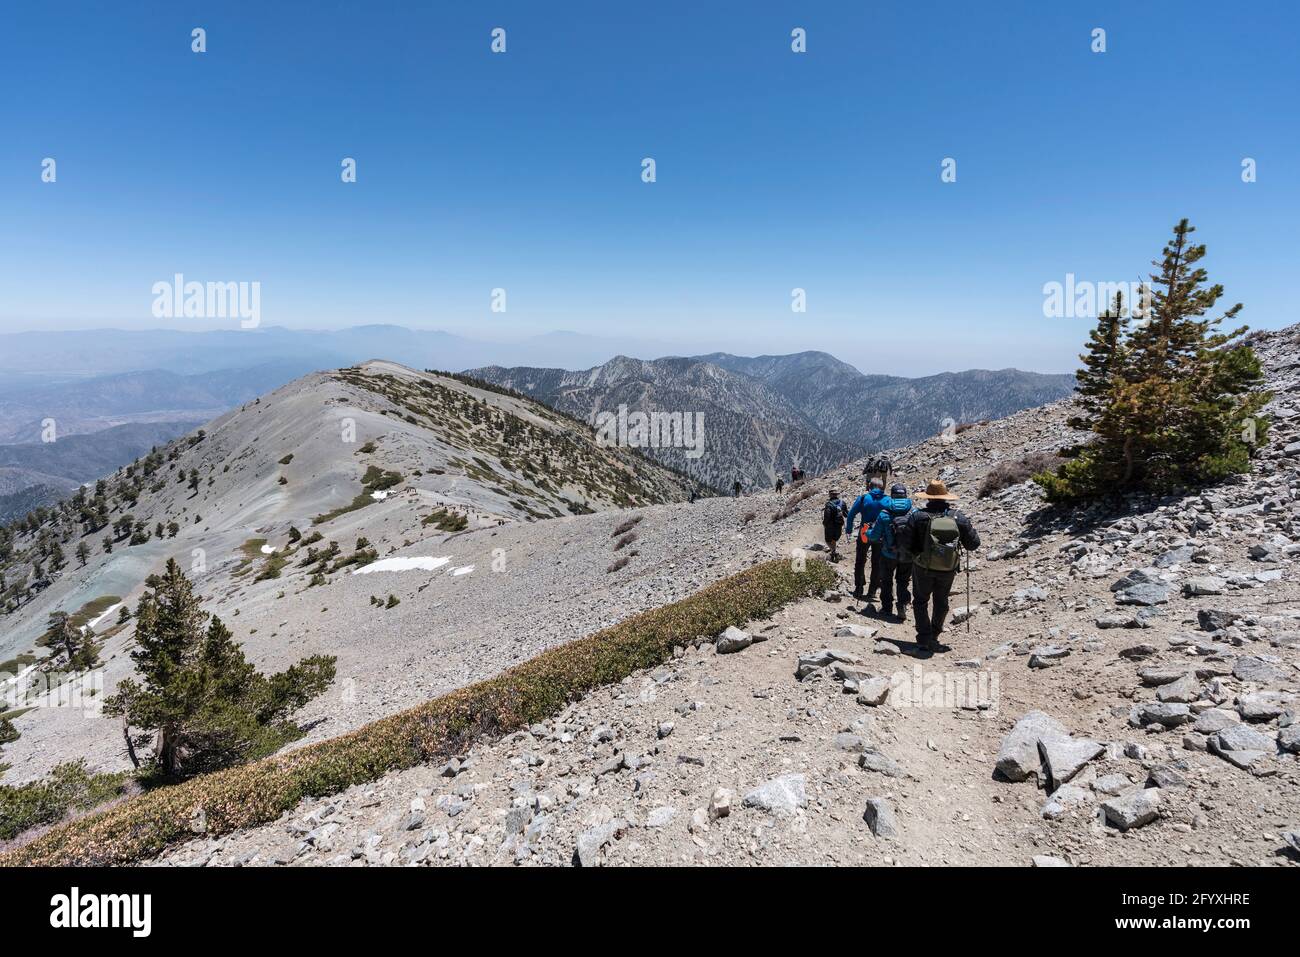 San Gabriel Mountains National Monument, Kalifornien, USA - 23. Mai 2021: Wanderer auf dem beliebten Devils Backbone Trail nahe dem Gipfel des Mt Baldy. Stockfoto